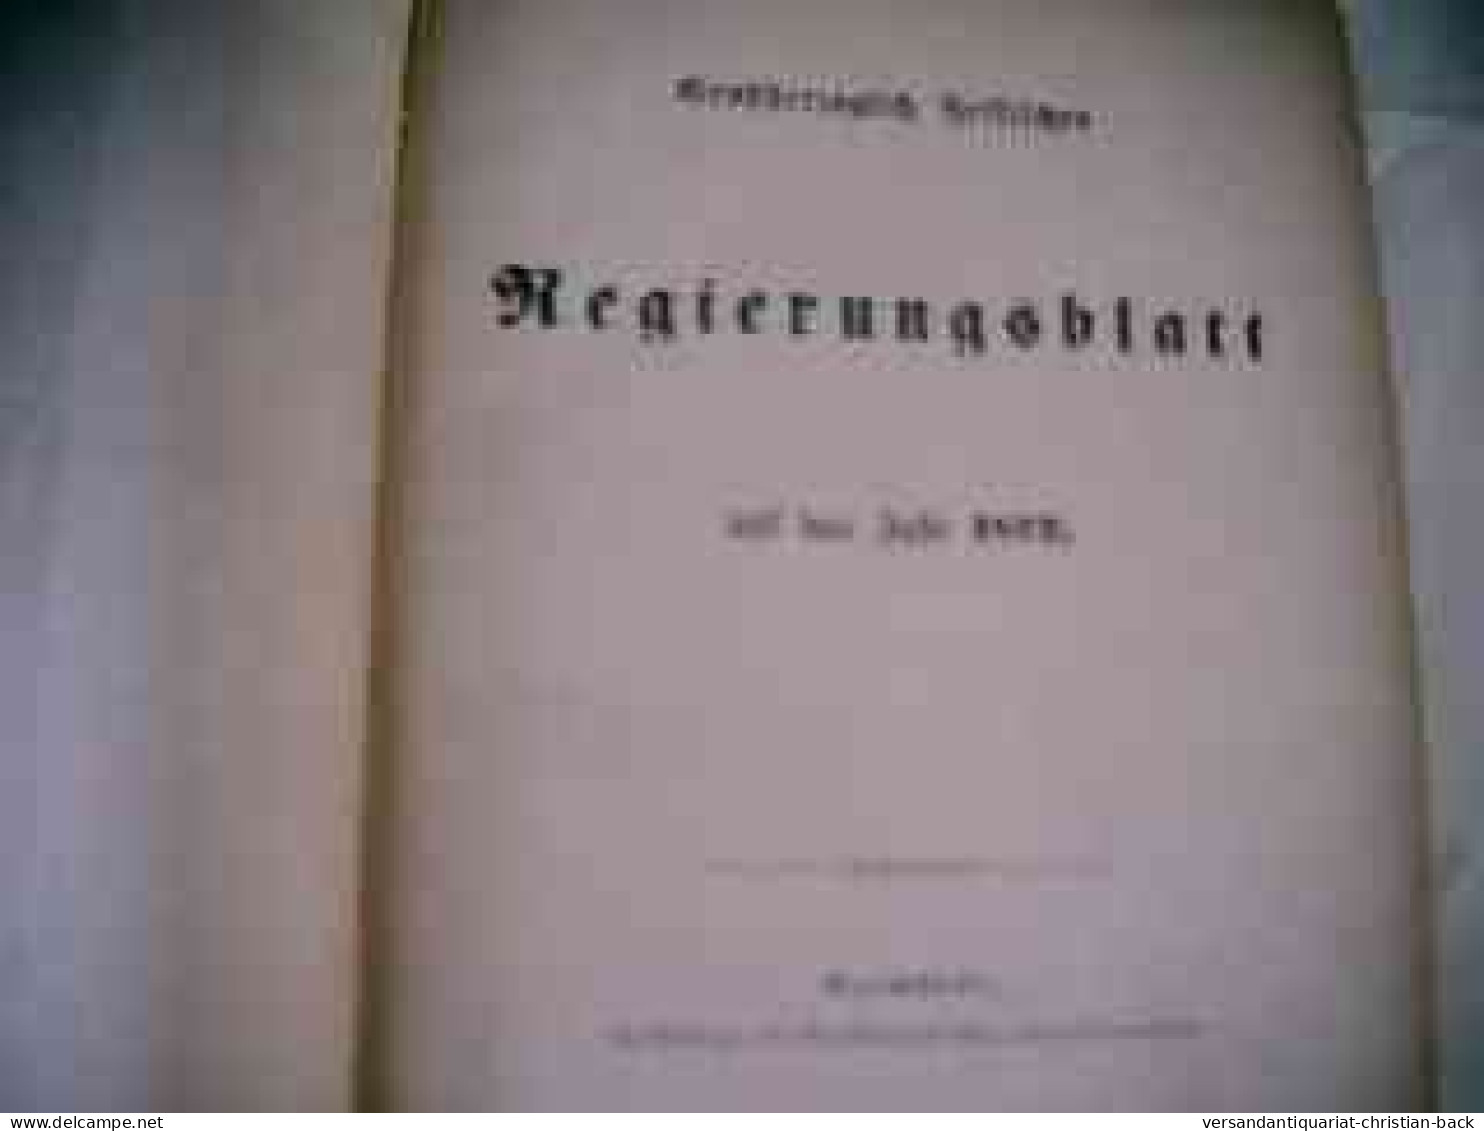 Großherzoglich Hessisches Regierungsblatt Für Das Jahr 1872 - Droit